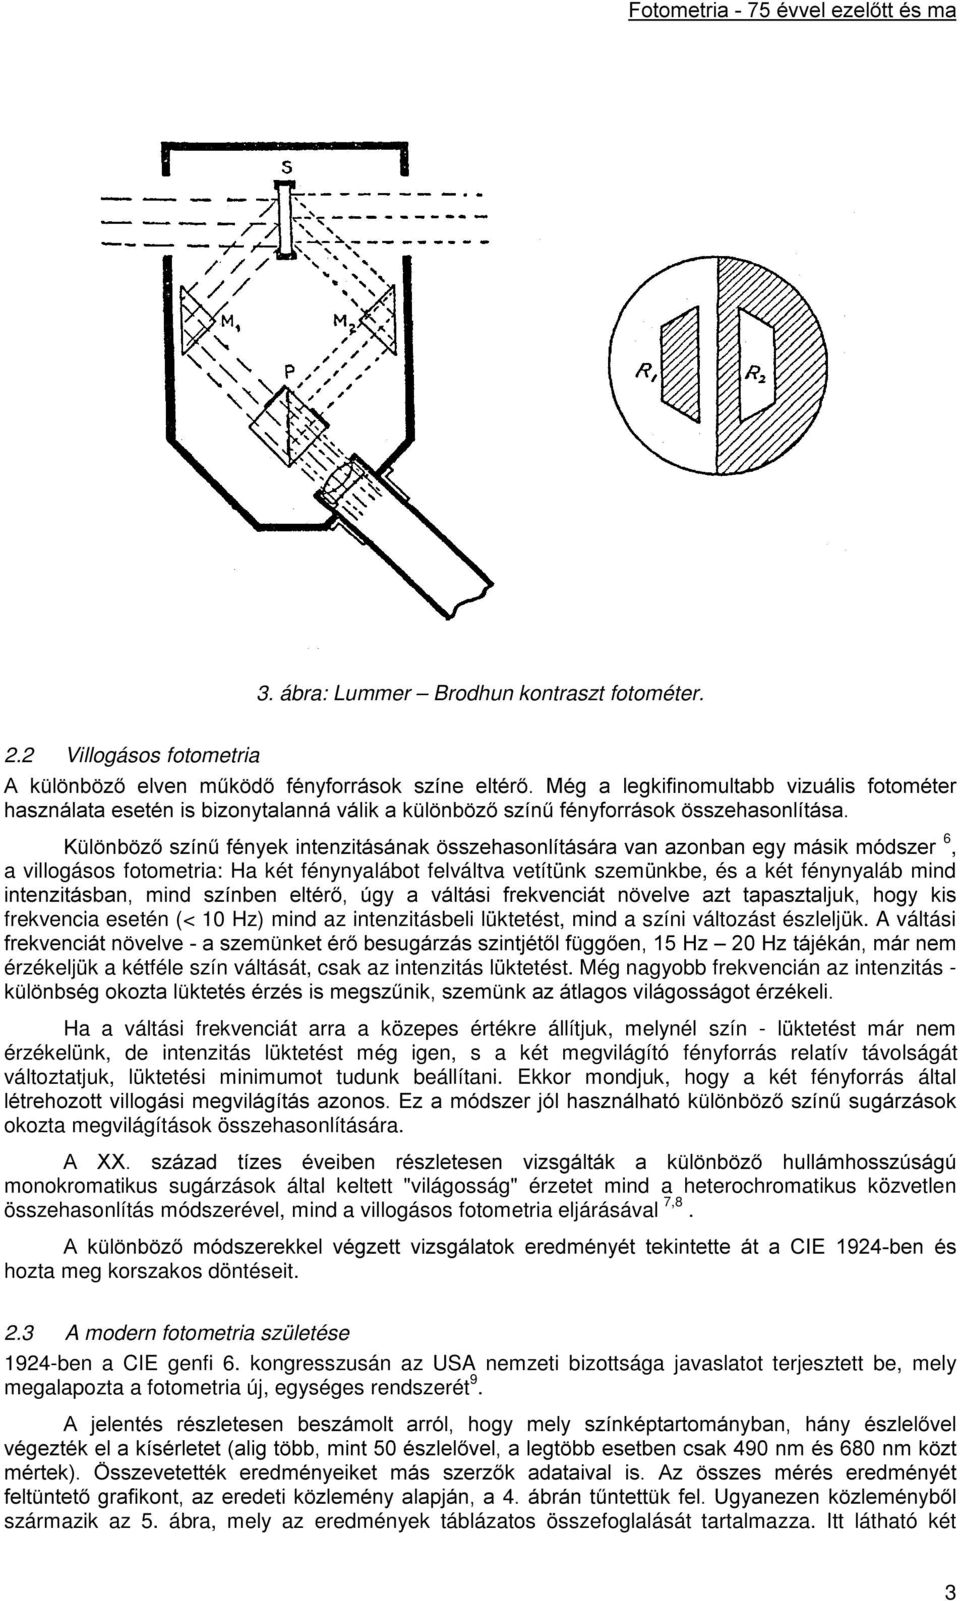 Schanda János Veszprémi Egyetem Képfeldolgozás és Neuroszámítógépek  Tanszéke - PDF Ingyenes letöltés